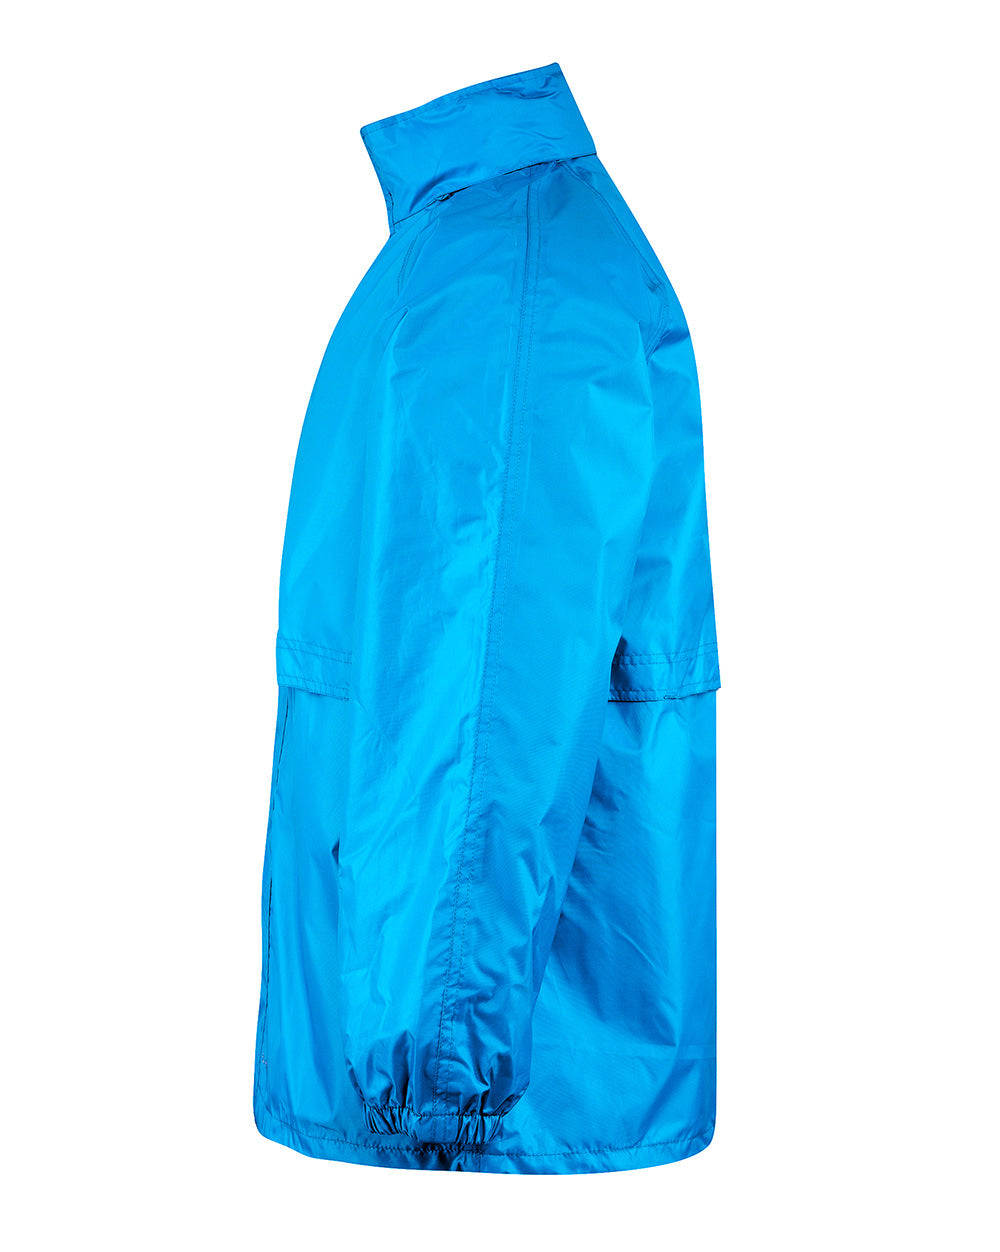 STOWaway Jacket in Blue Aster